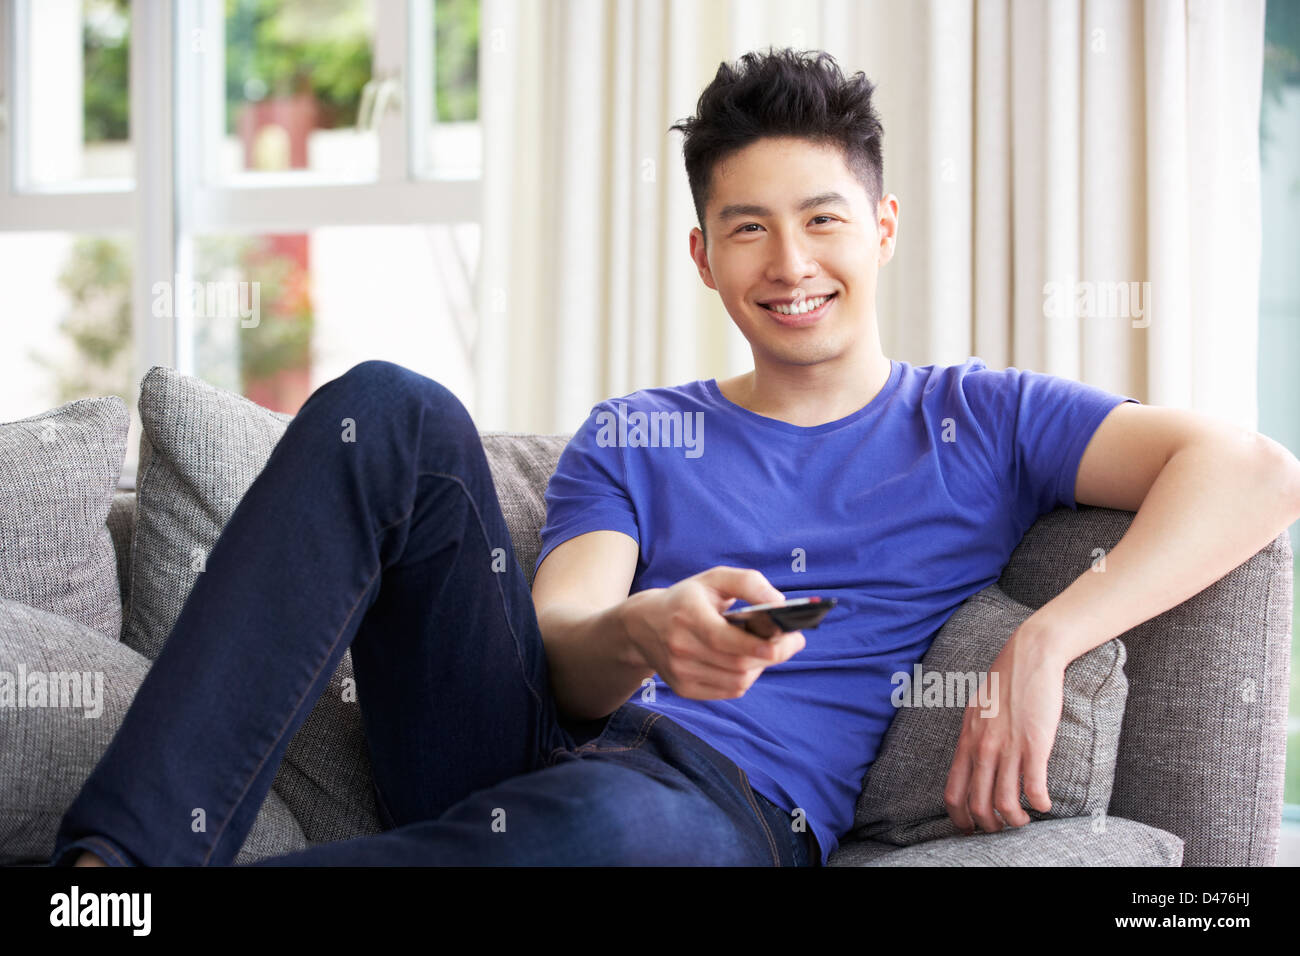 Junge Chinesen Mann zu sitzen und zu Hause vor dem Fernseher auf Sofa Stockfoto